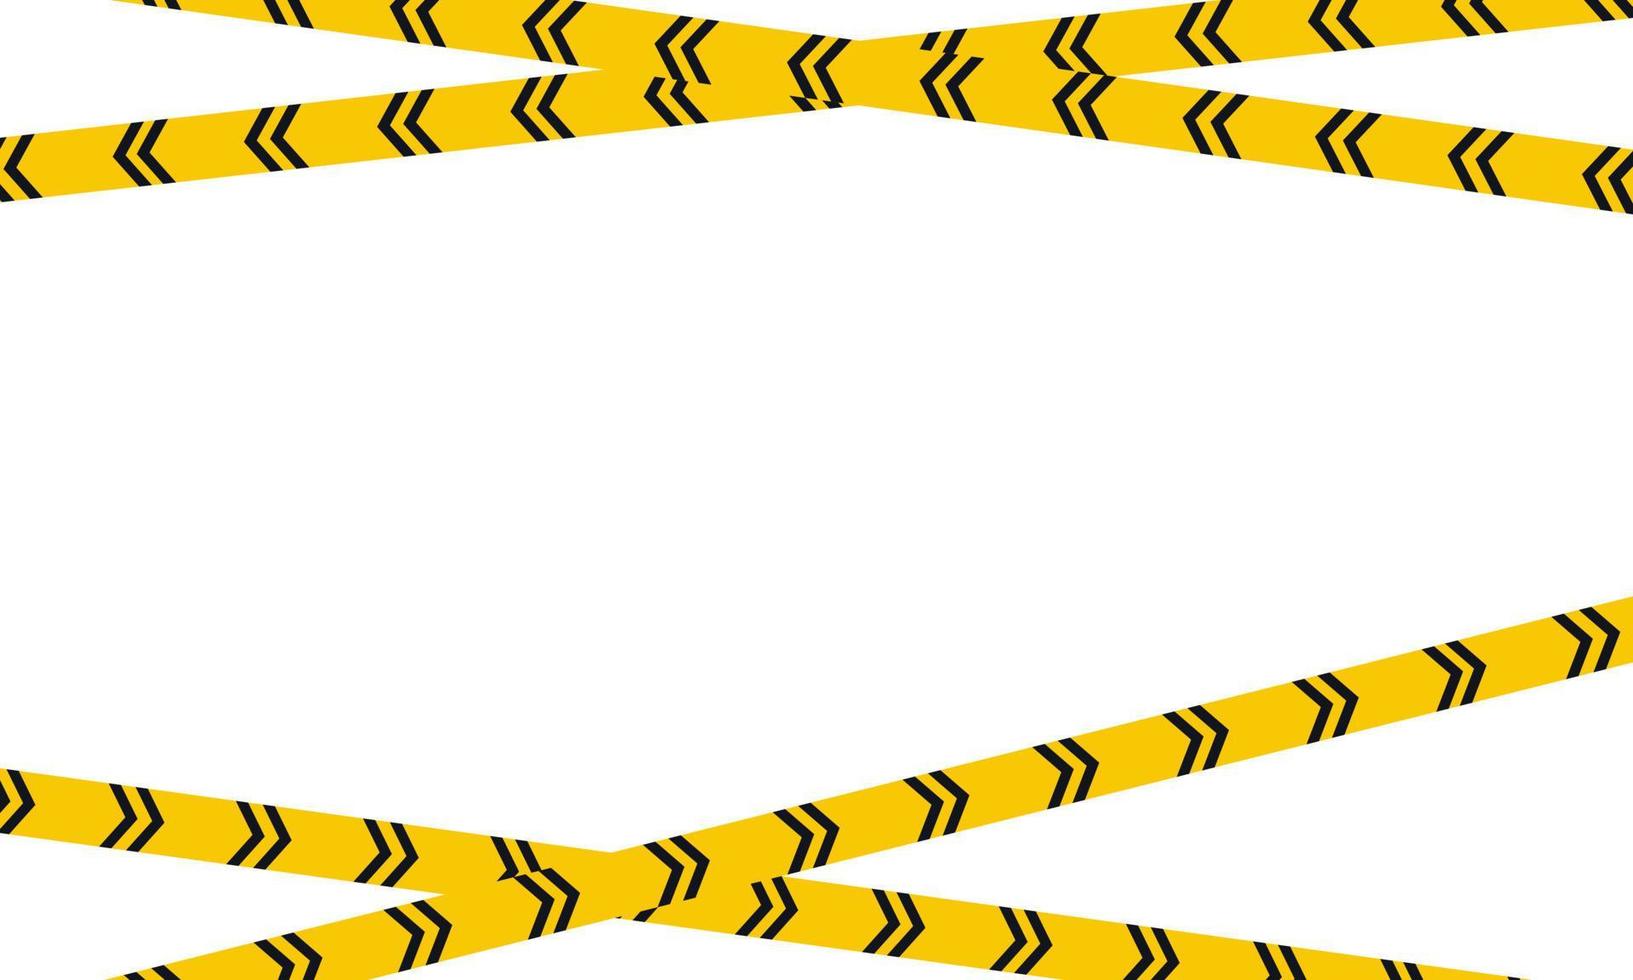 modelo de banner de aviso de segurança. faixa listrada preto-amarelo-branco. ilustração vetorial em fundo branco. vetor